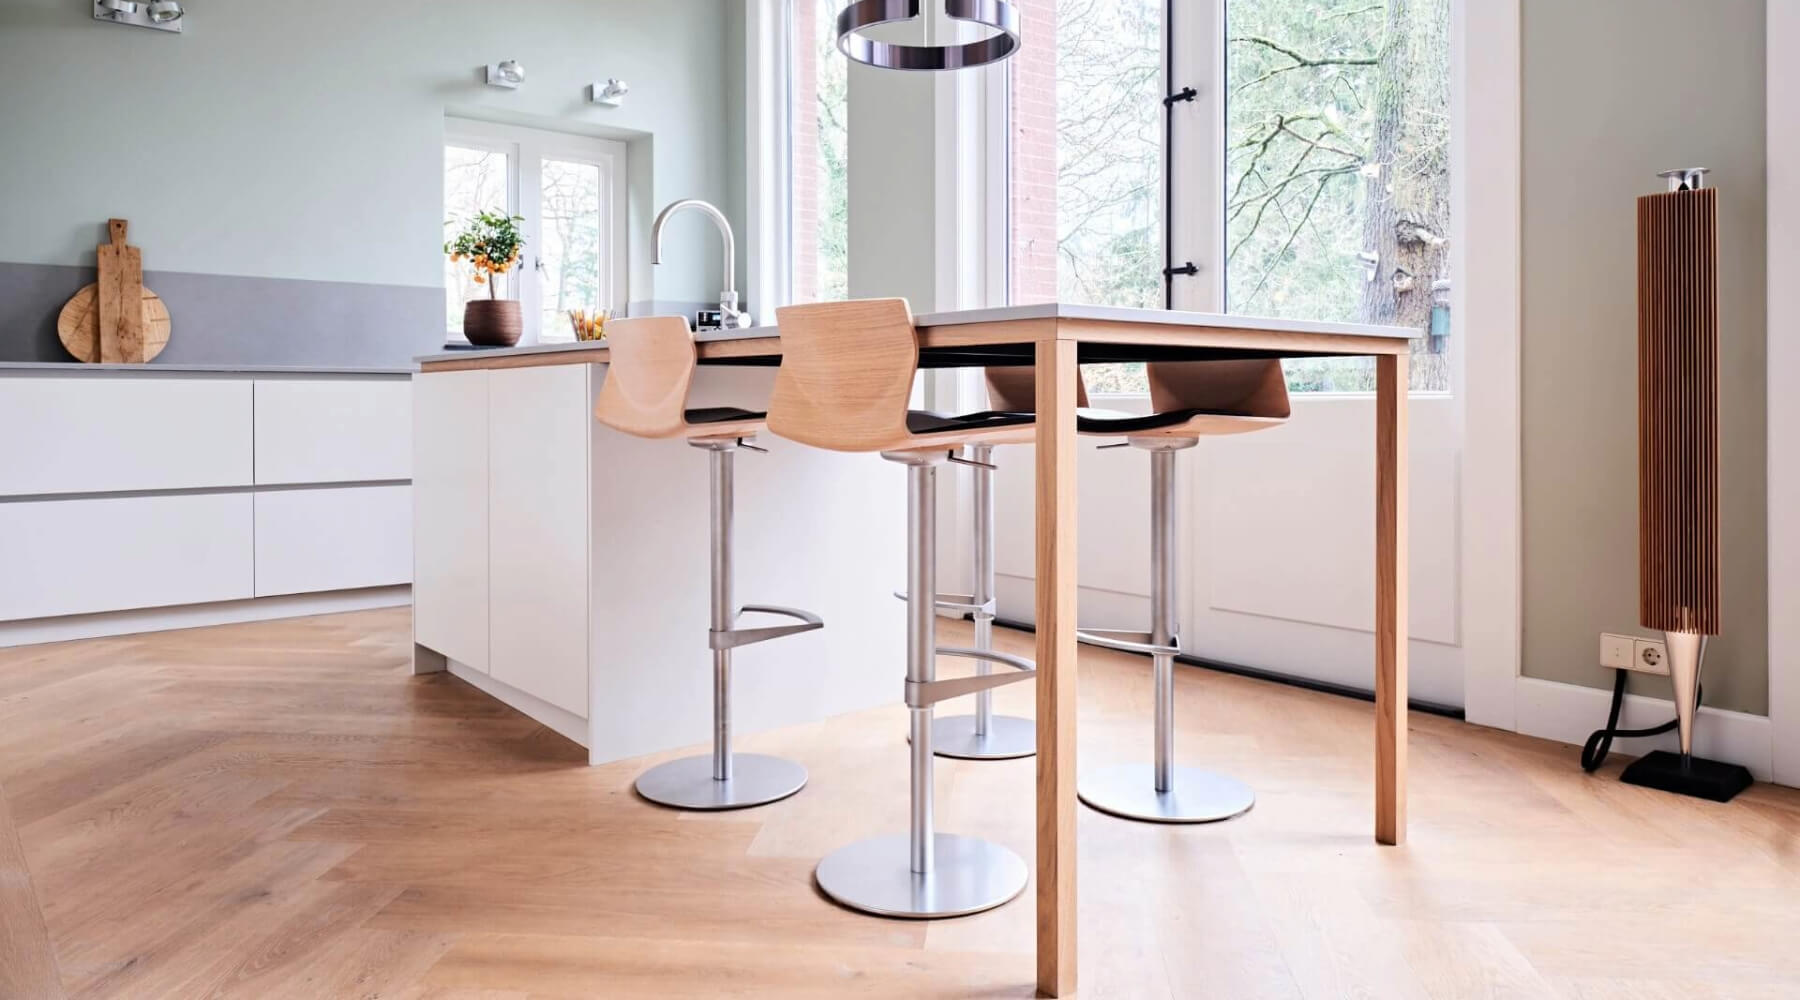 In een woning in Leiden is deze witte keuken gecombineerd met de visgraat vloer